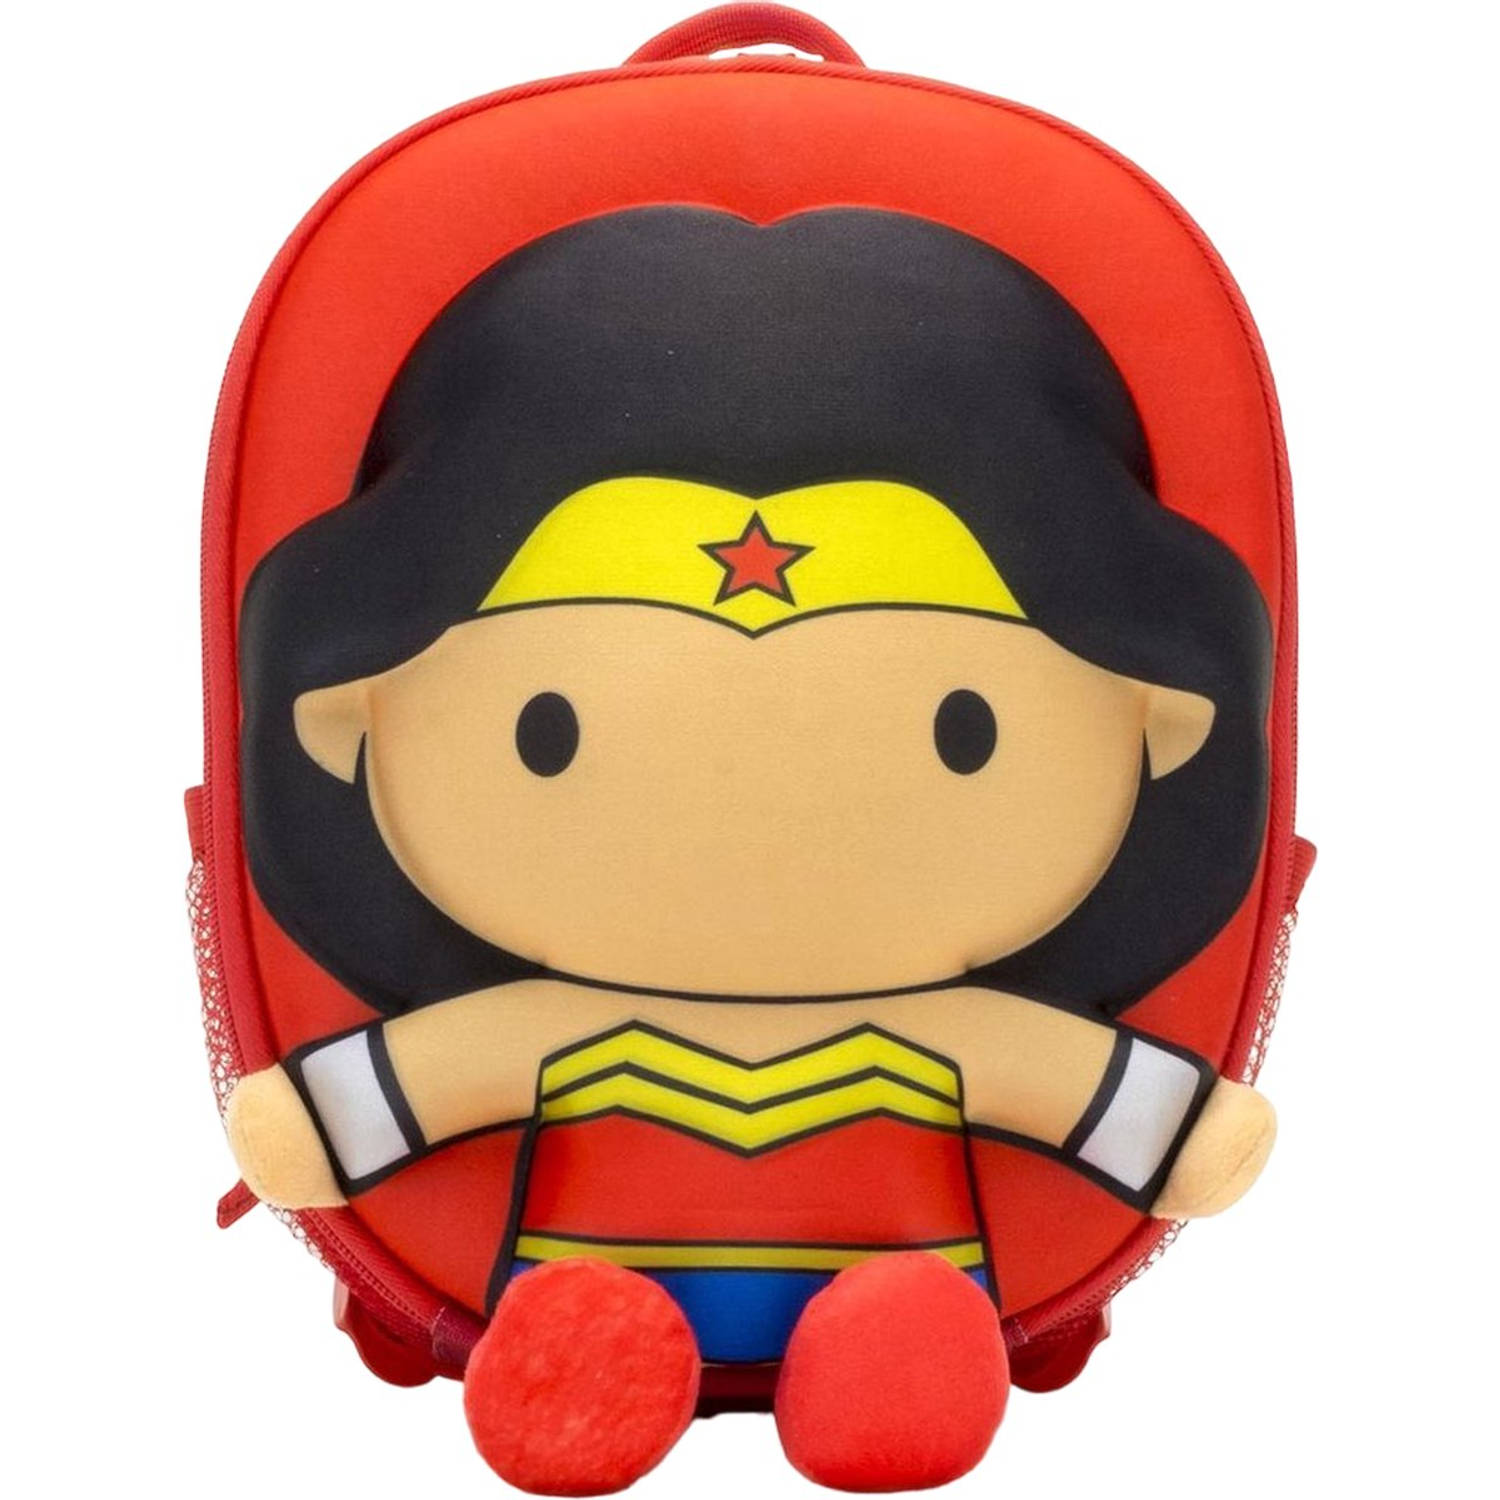 Ridaz rugzak Wonder Woman 6 liter rood